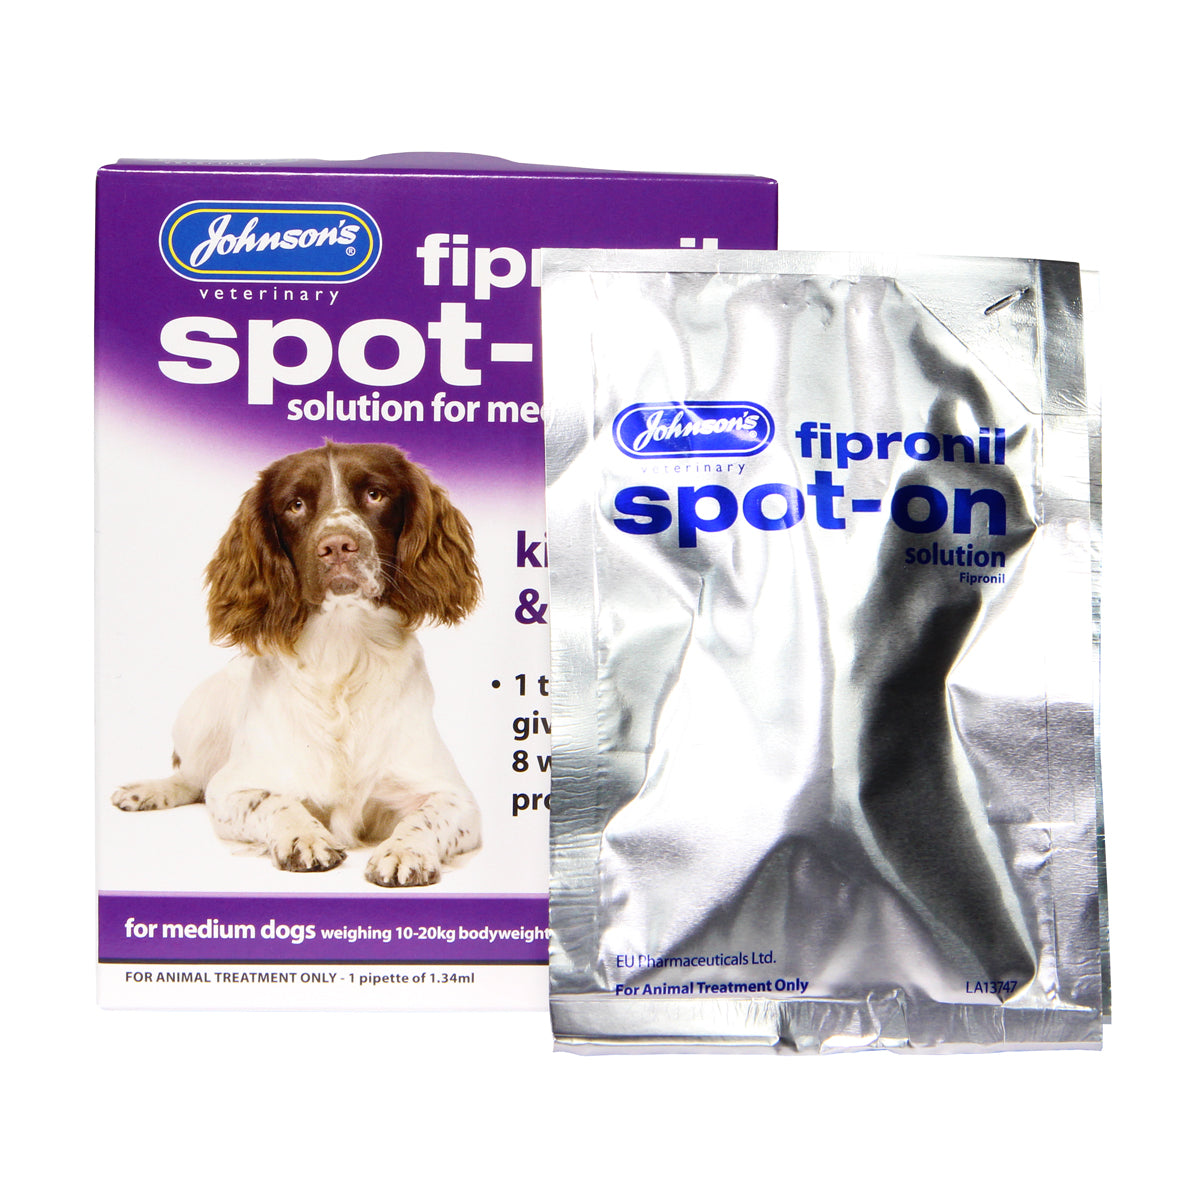 Fipronil Spot-on For Medium Dogs 1 Vial Pack